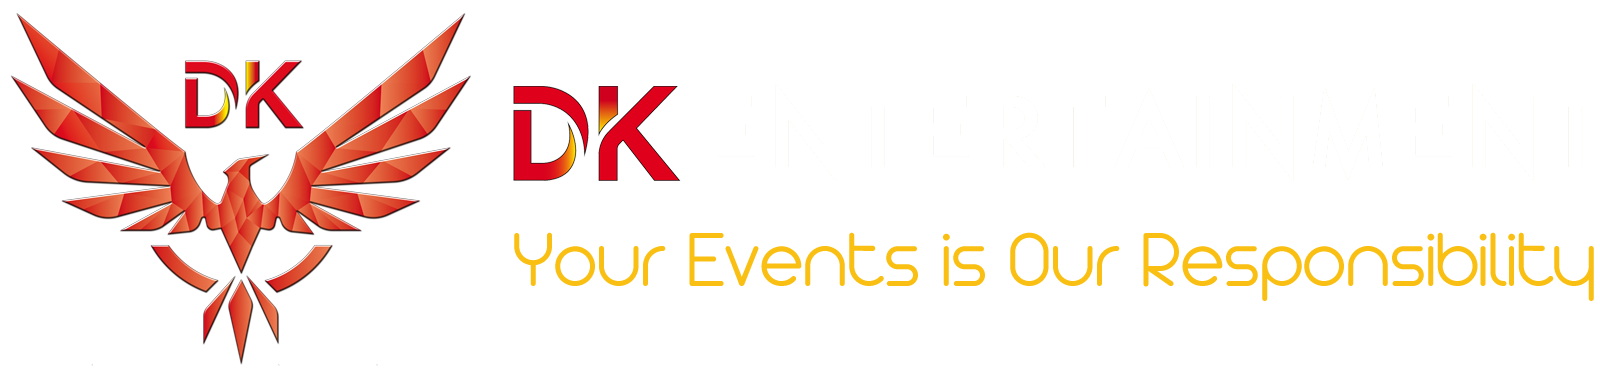 DK Event - Đạo diễn và tổ chức sự kiện